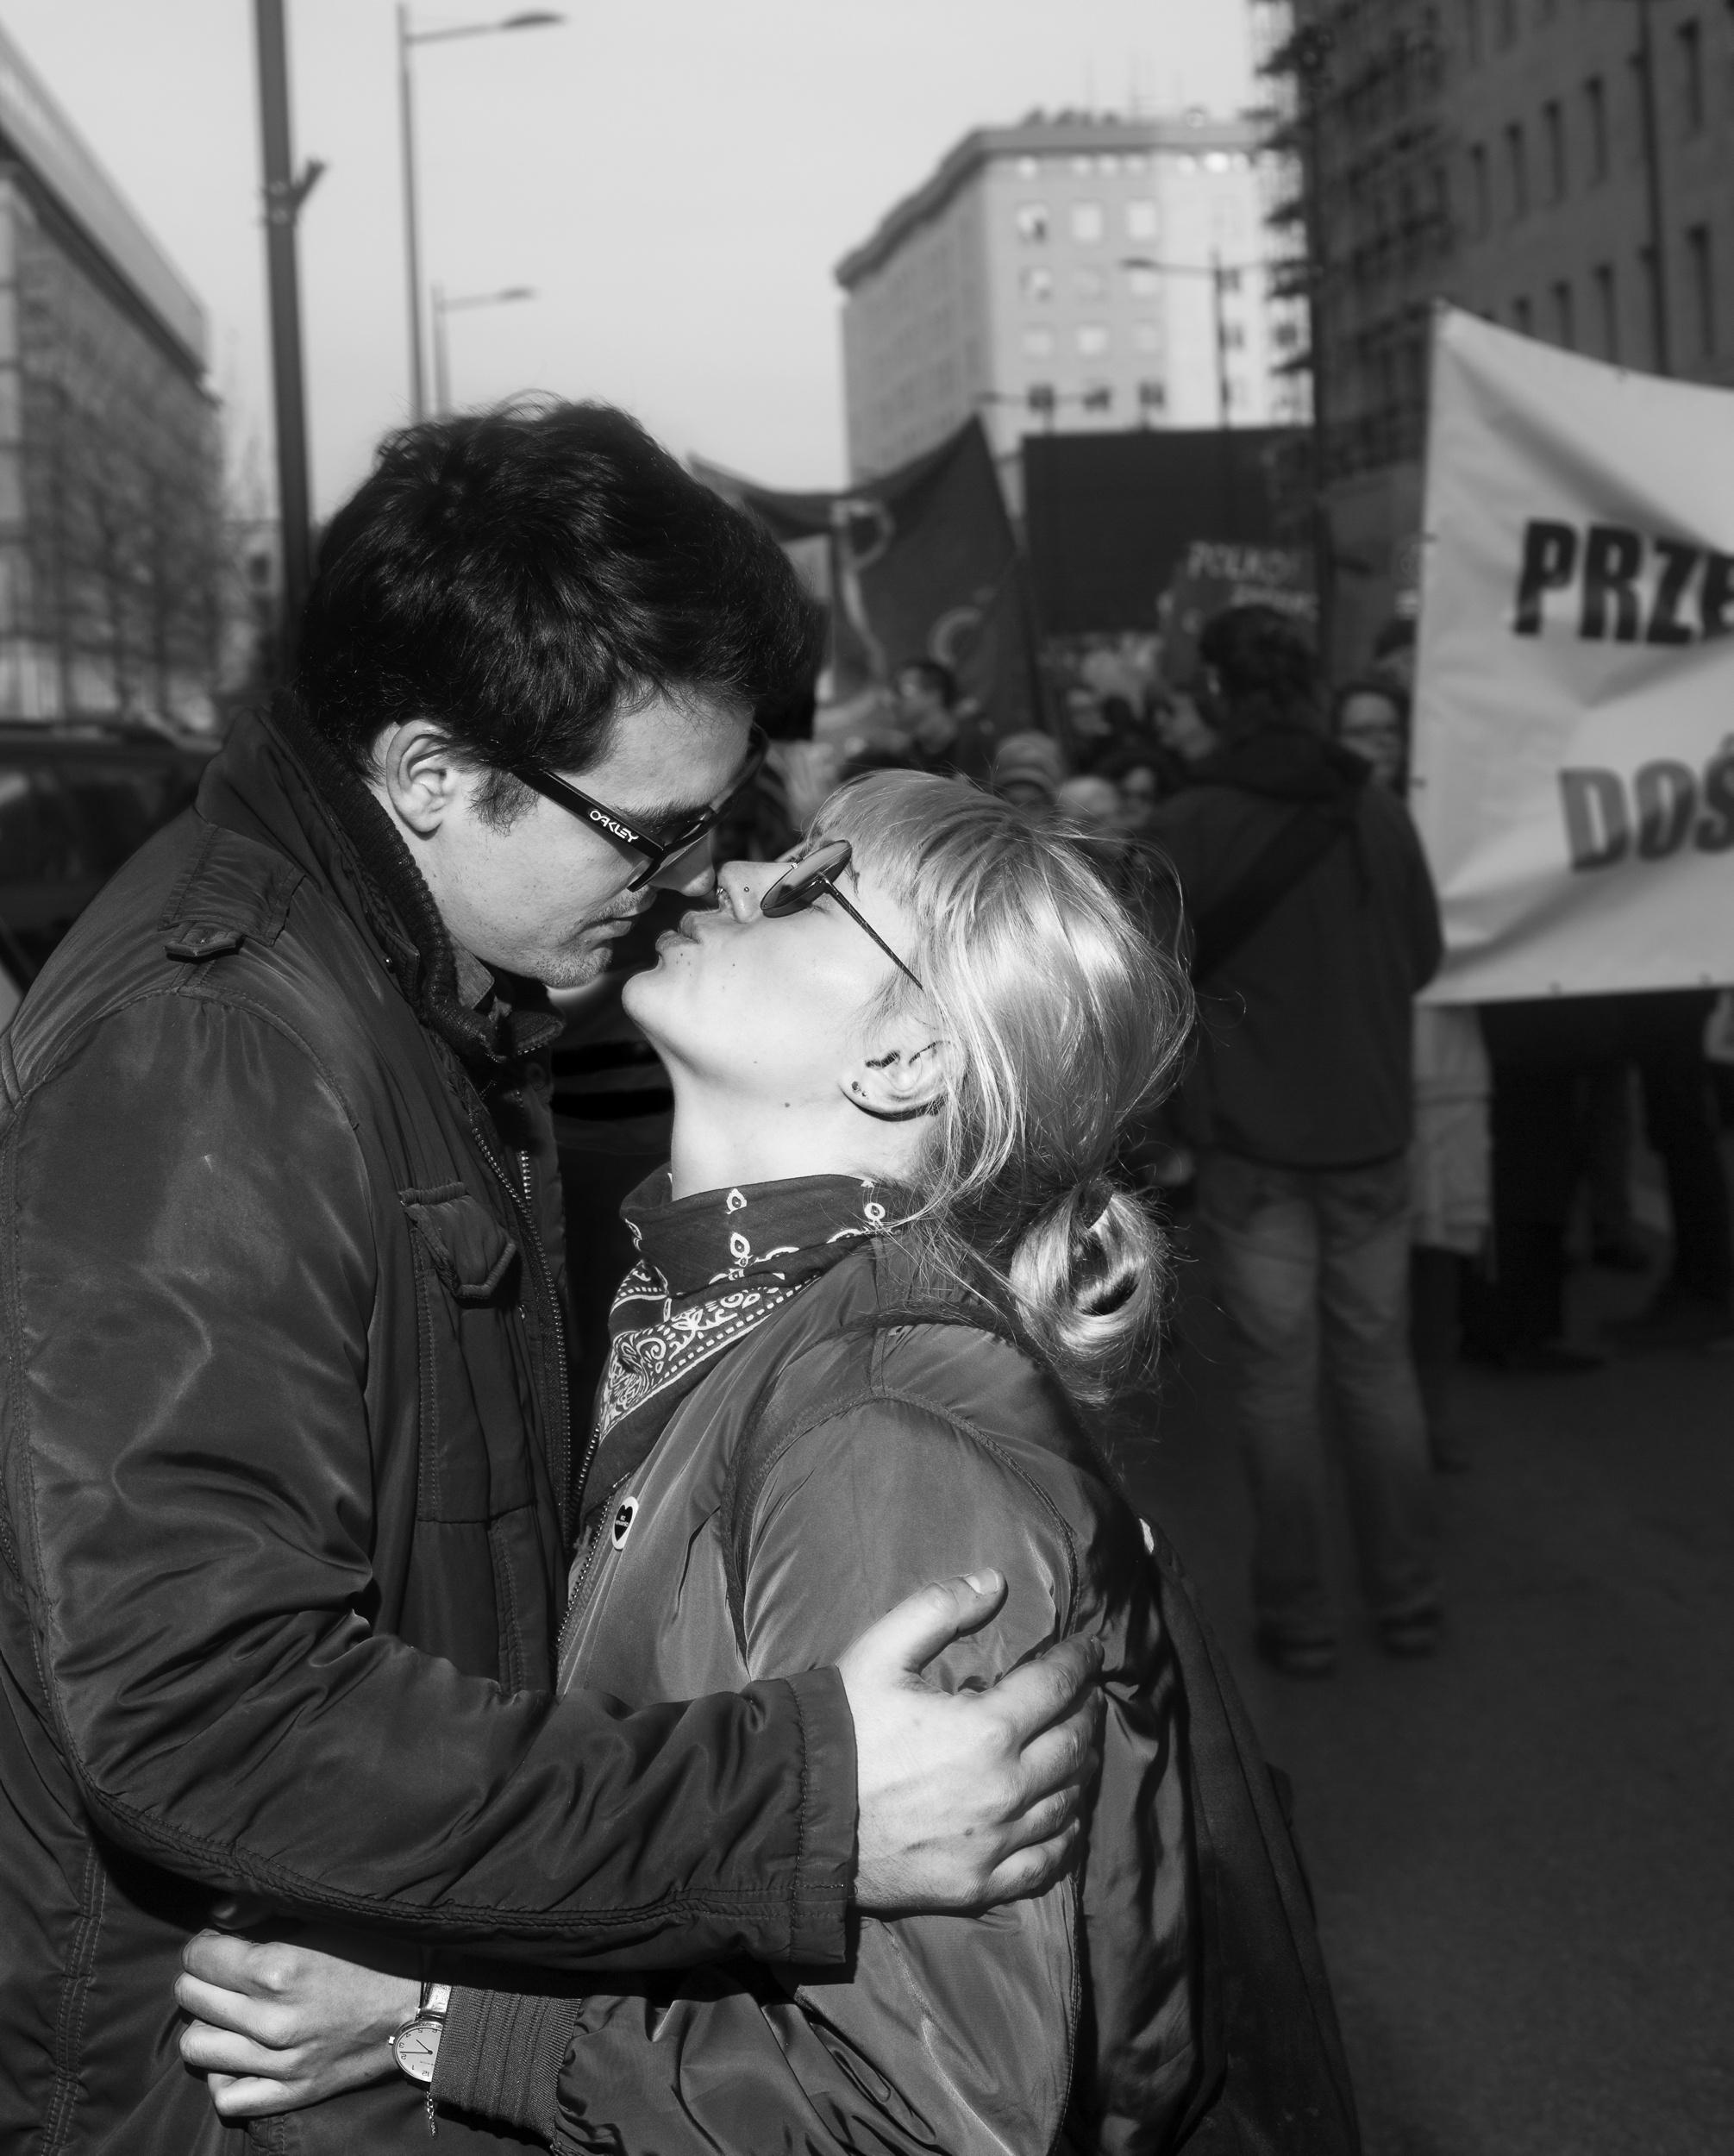 Całująca się para podczas protestu feministycznego